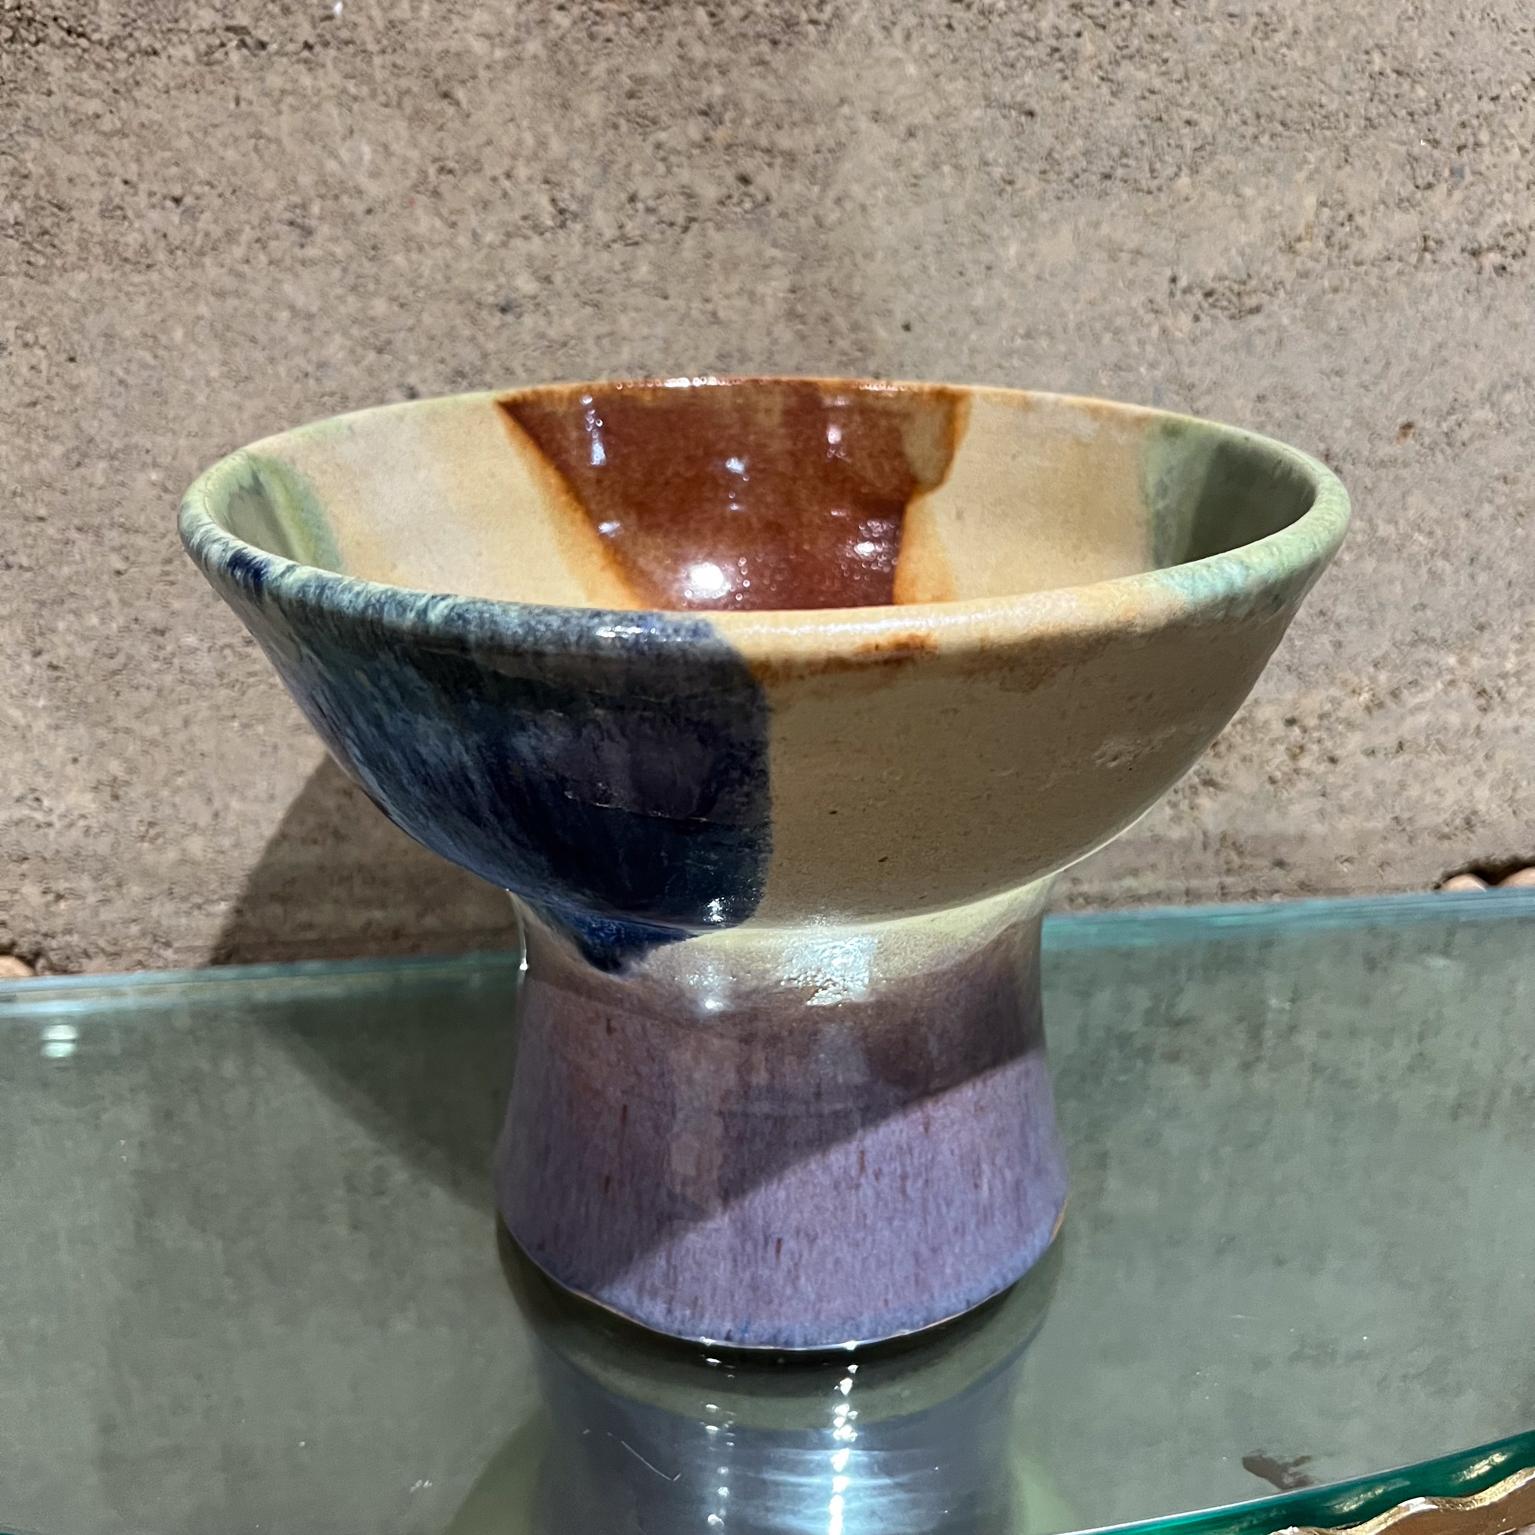 1970er Art Pottery Drip Glazed Pedestal Bowl
7 h x 9,13 Durchmesser
Gebrauchter Original-Vintage-Zustand.
Siehe die aufgelisteten Bilder